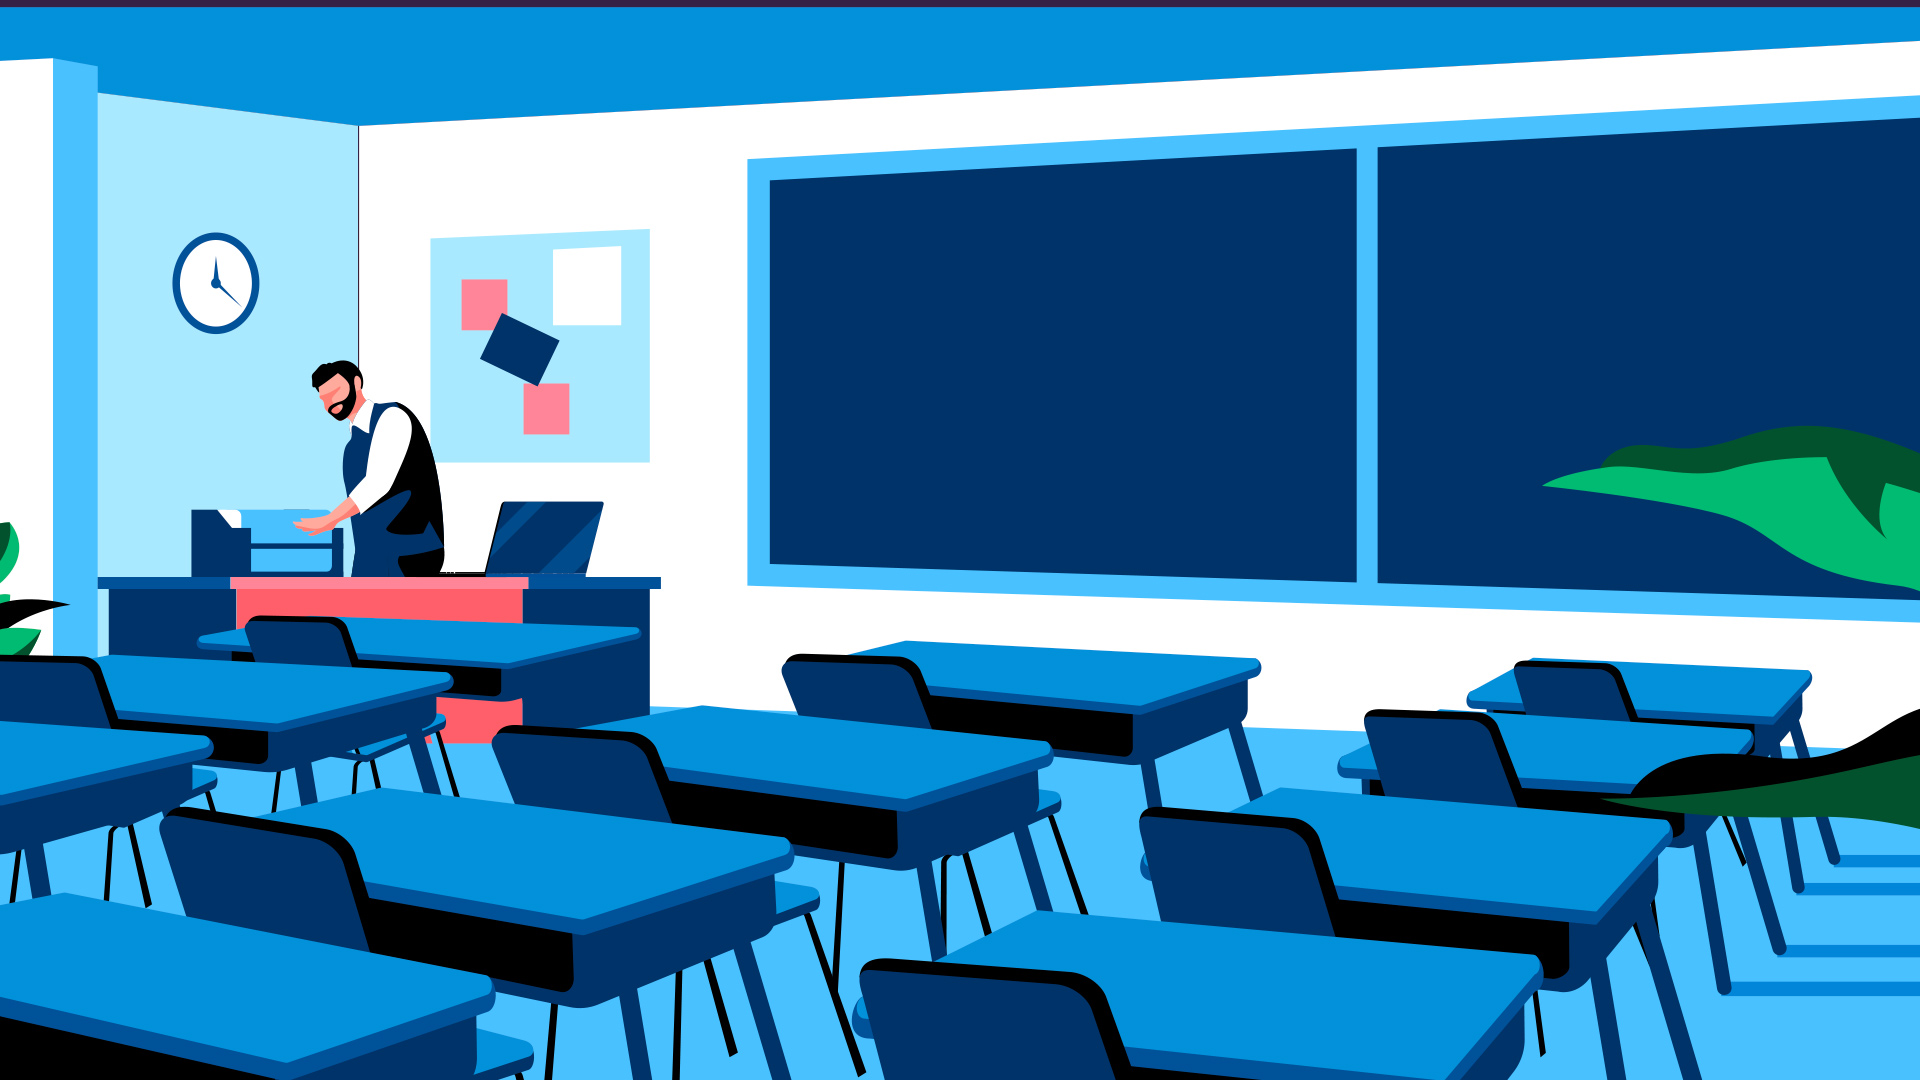 Tutor in classroom preparing lessons